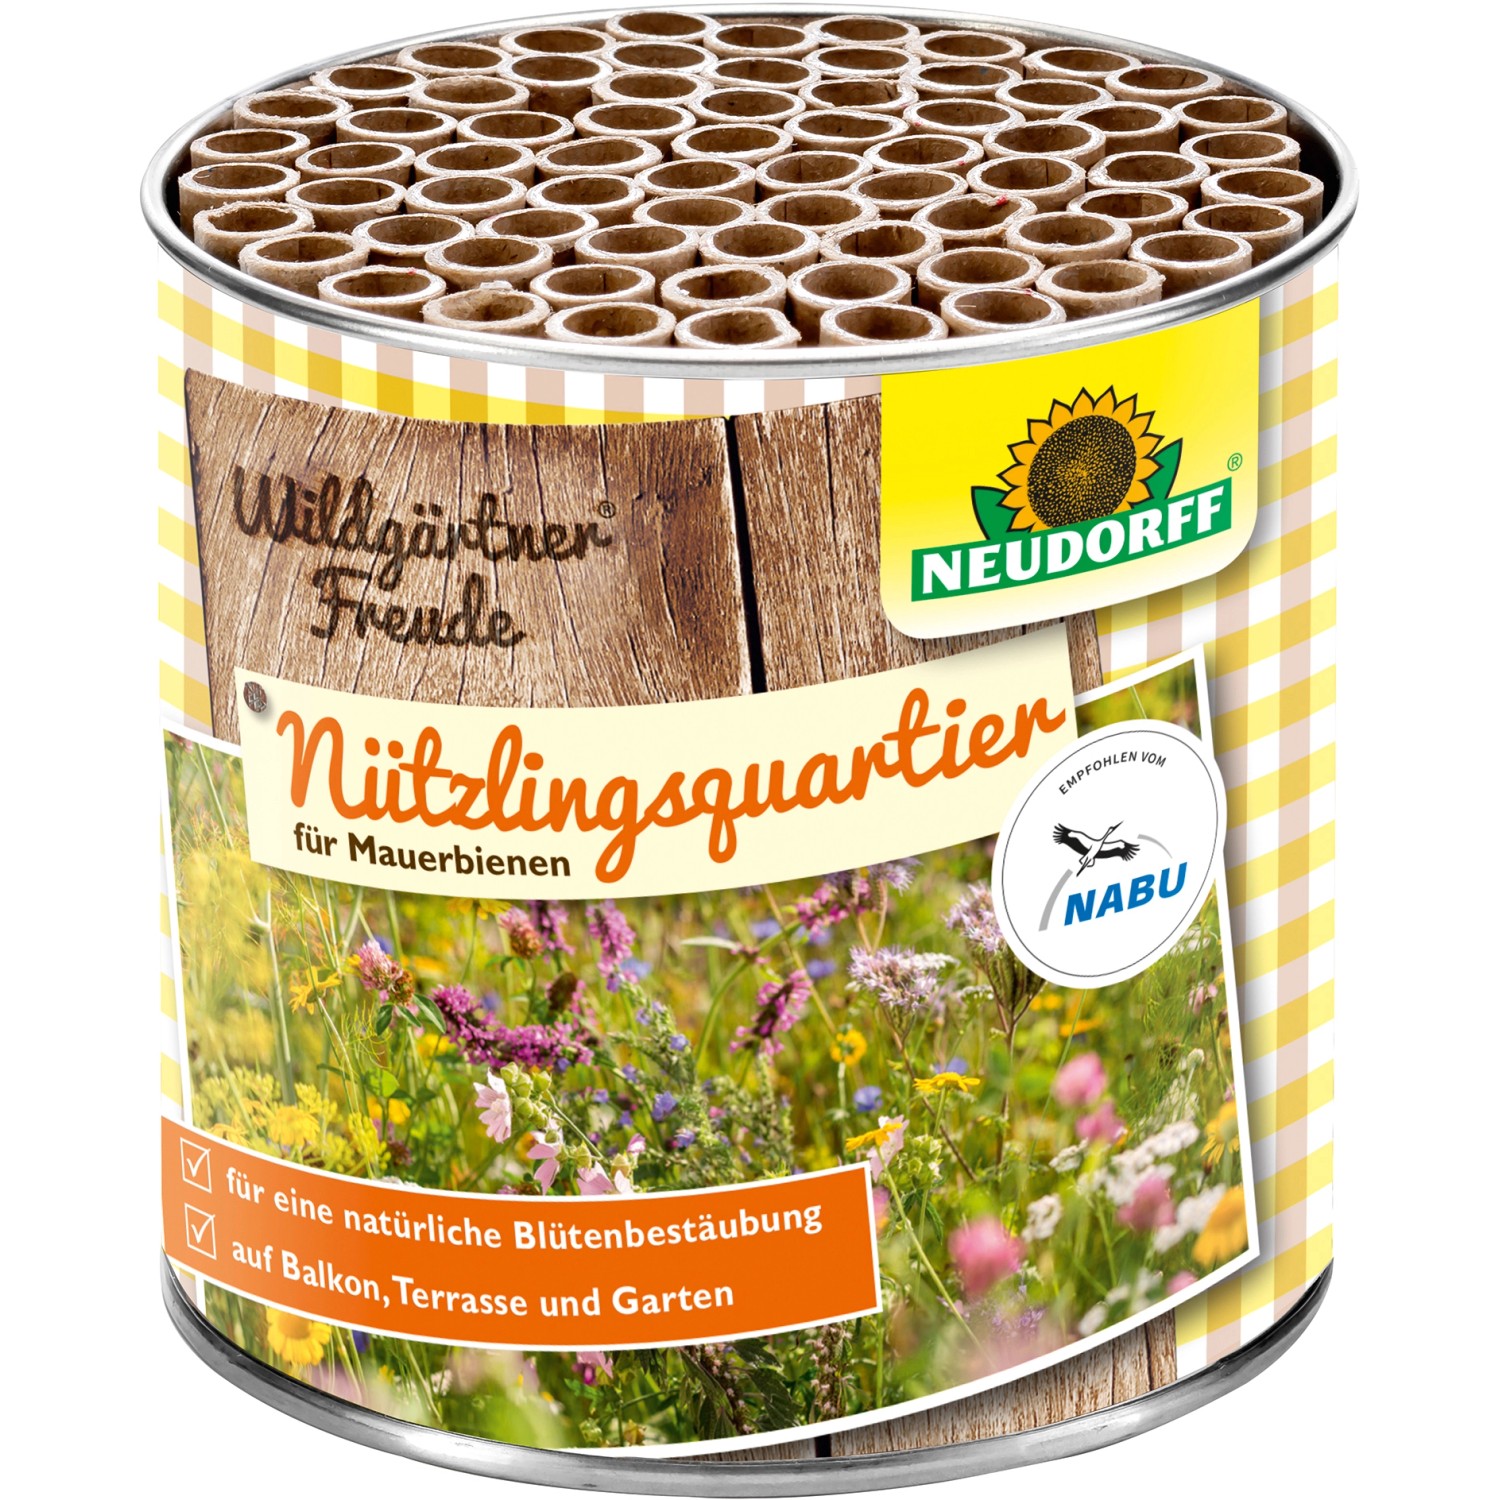 Neudorff Wildgärtner Freude Nützlingsquartier für Mauerbienen